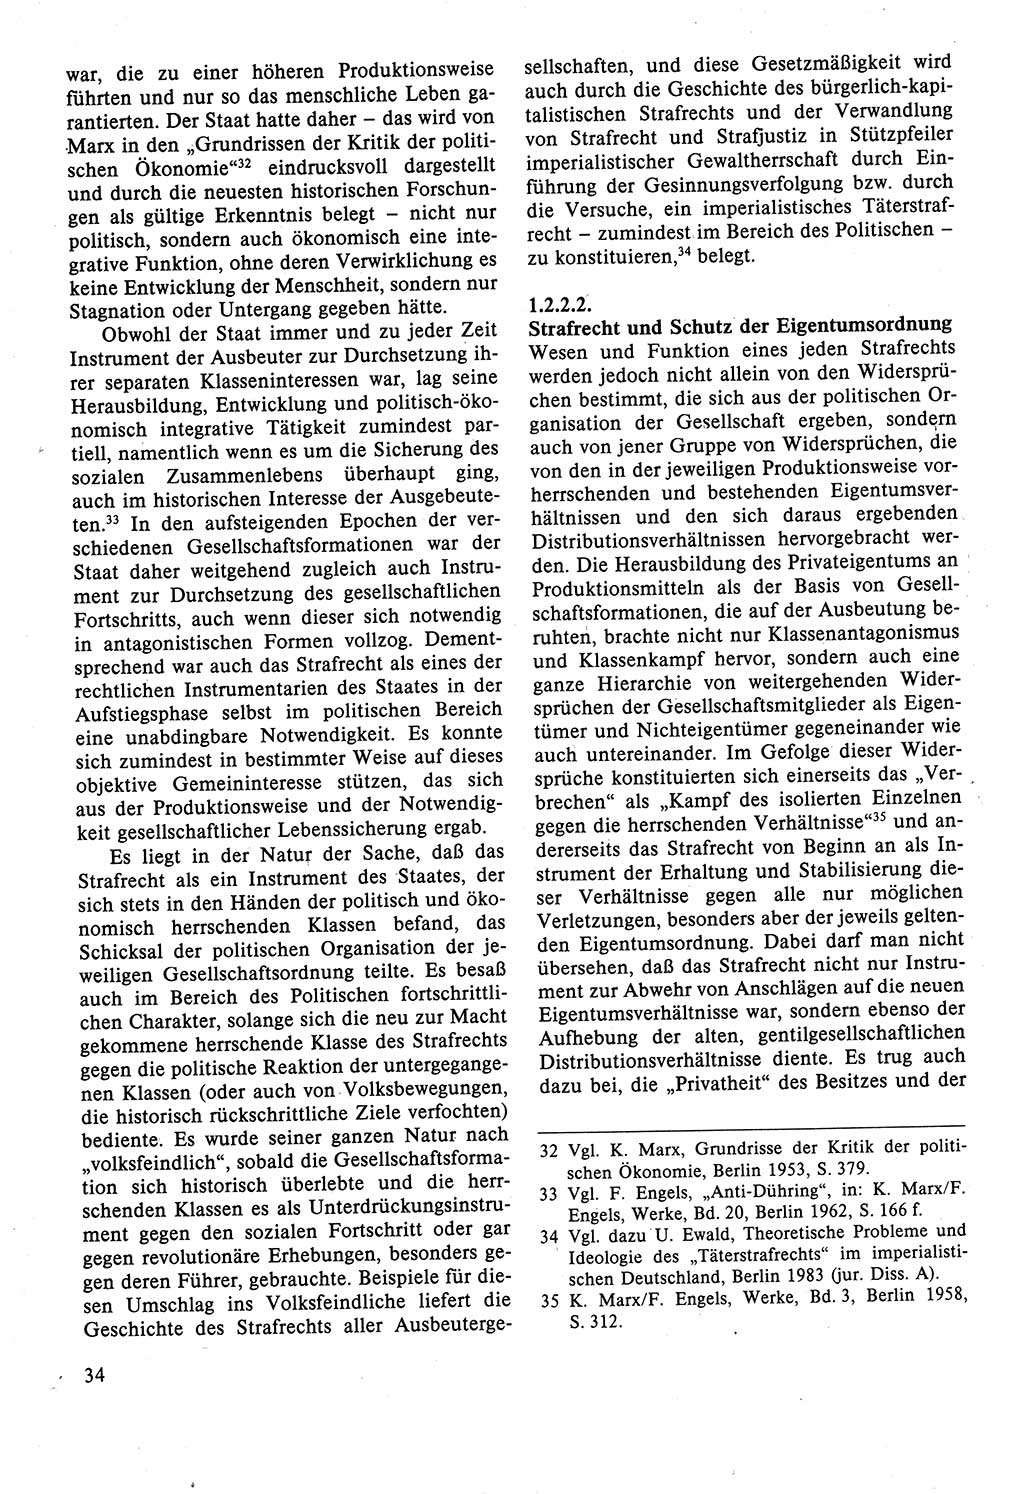 Strafrecht der DDR (Deutsche Demokratische Republik), Lehrbuch 1988, Seite 34 (Strafr. DDR Lb. 1988, S. 34)